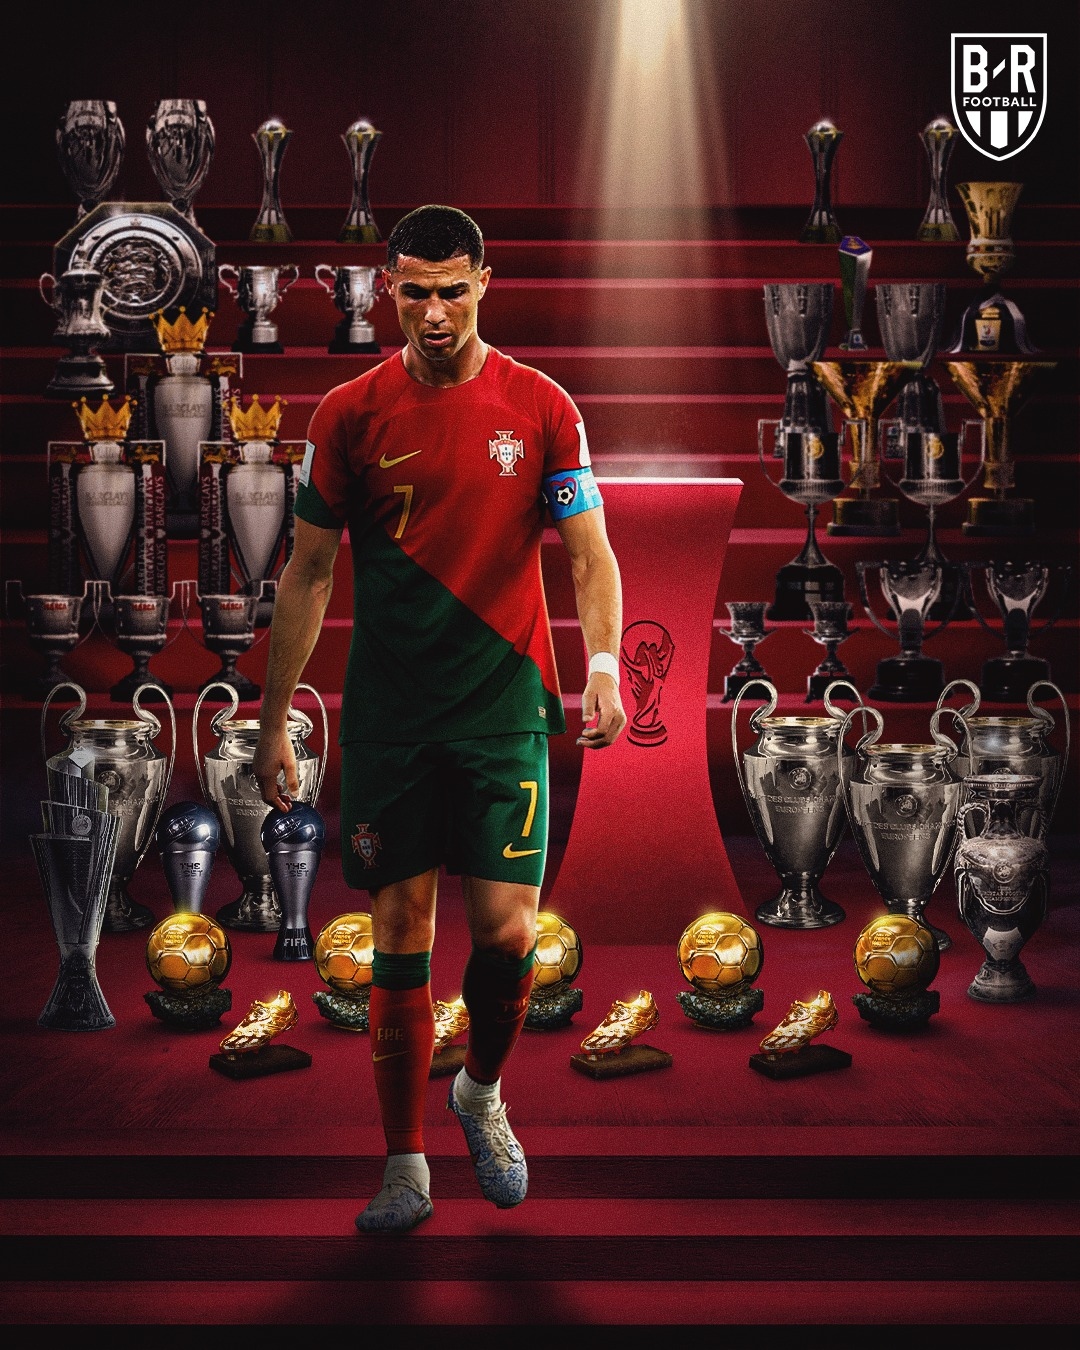 Ronaldo Morocco: Mời bạn đến với Maroc để khám phá hình ảnh Ronaldo và những giây phút cảm xúc đầy màu sắc trong tour du lịch của anh tại đất nước này.